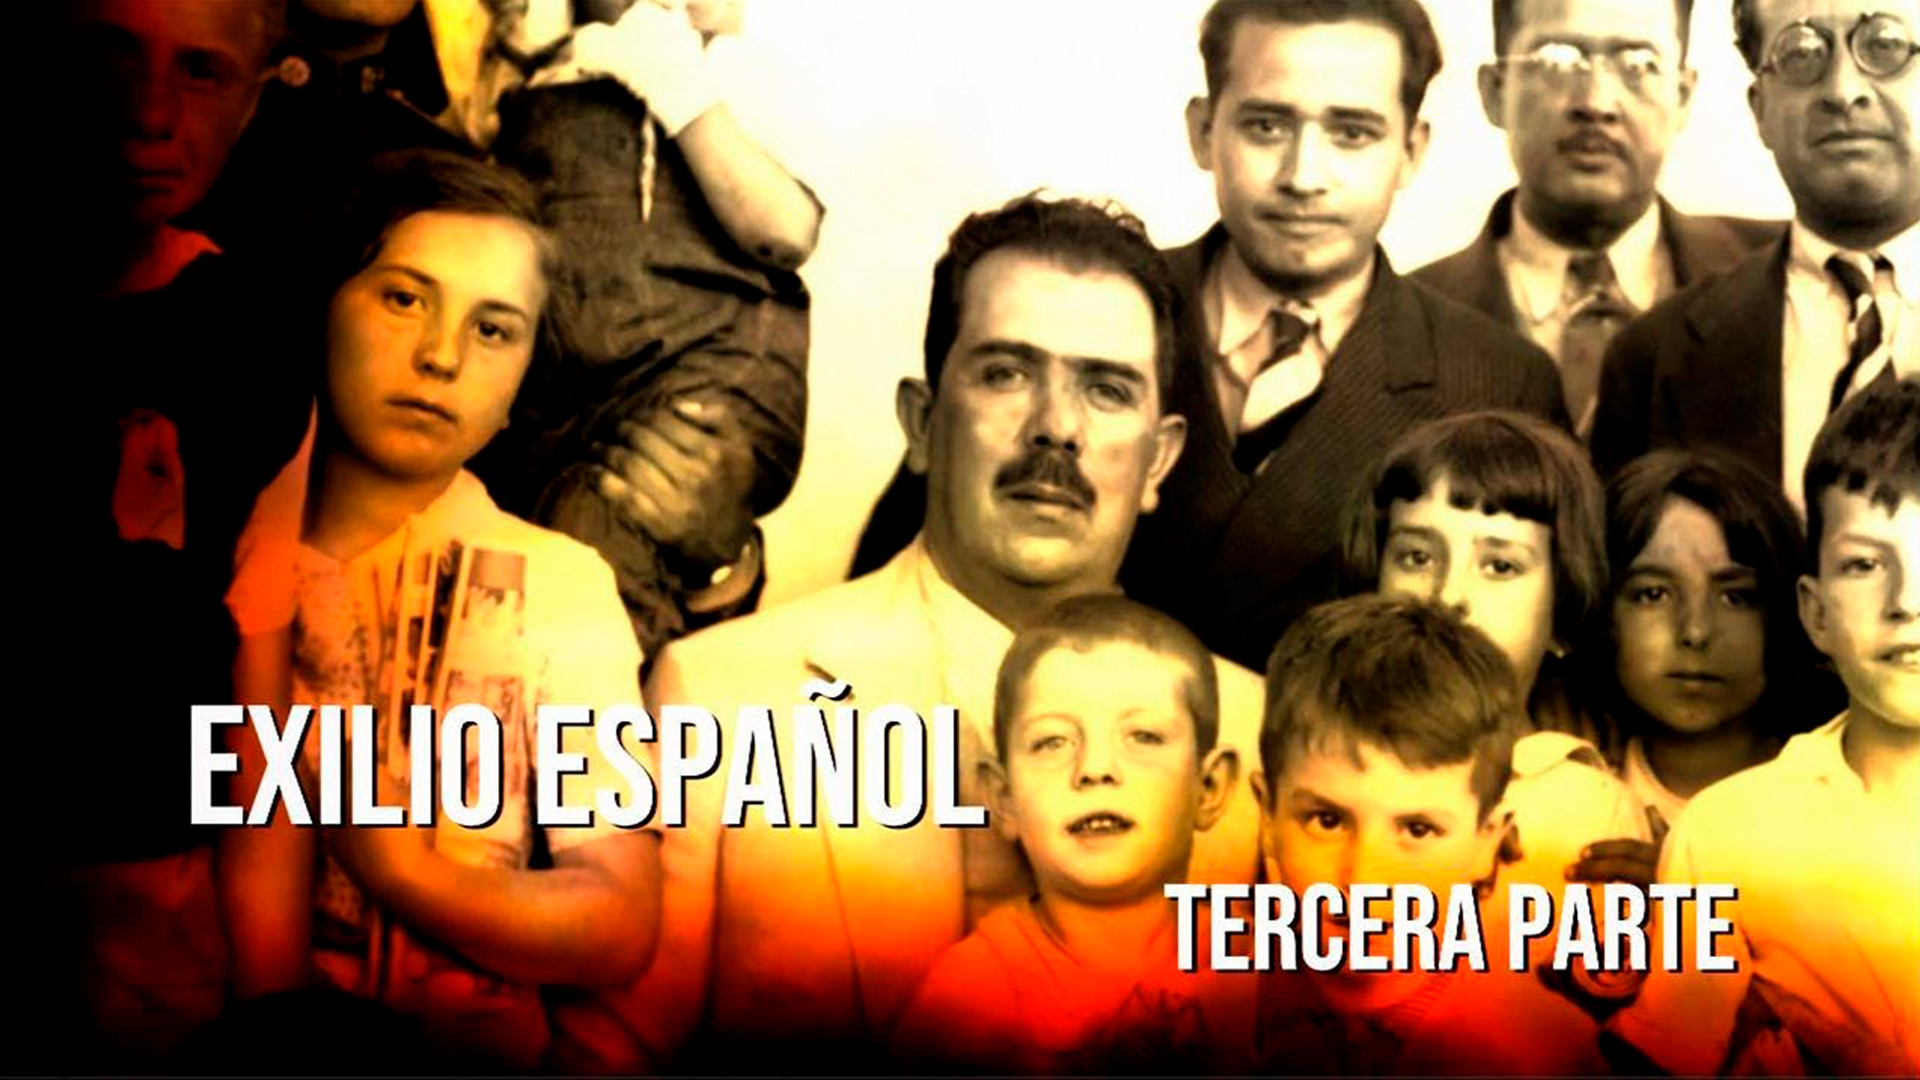 Exilio español. Tercera parte